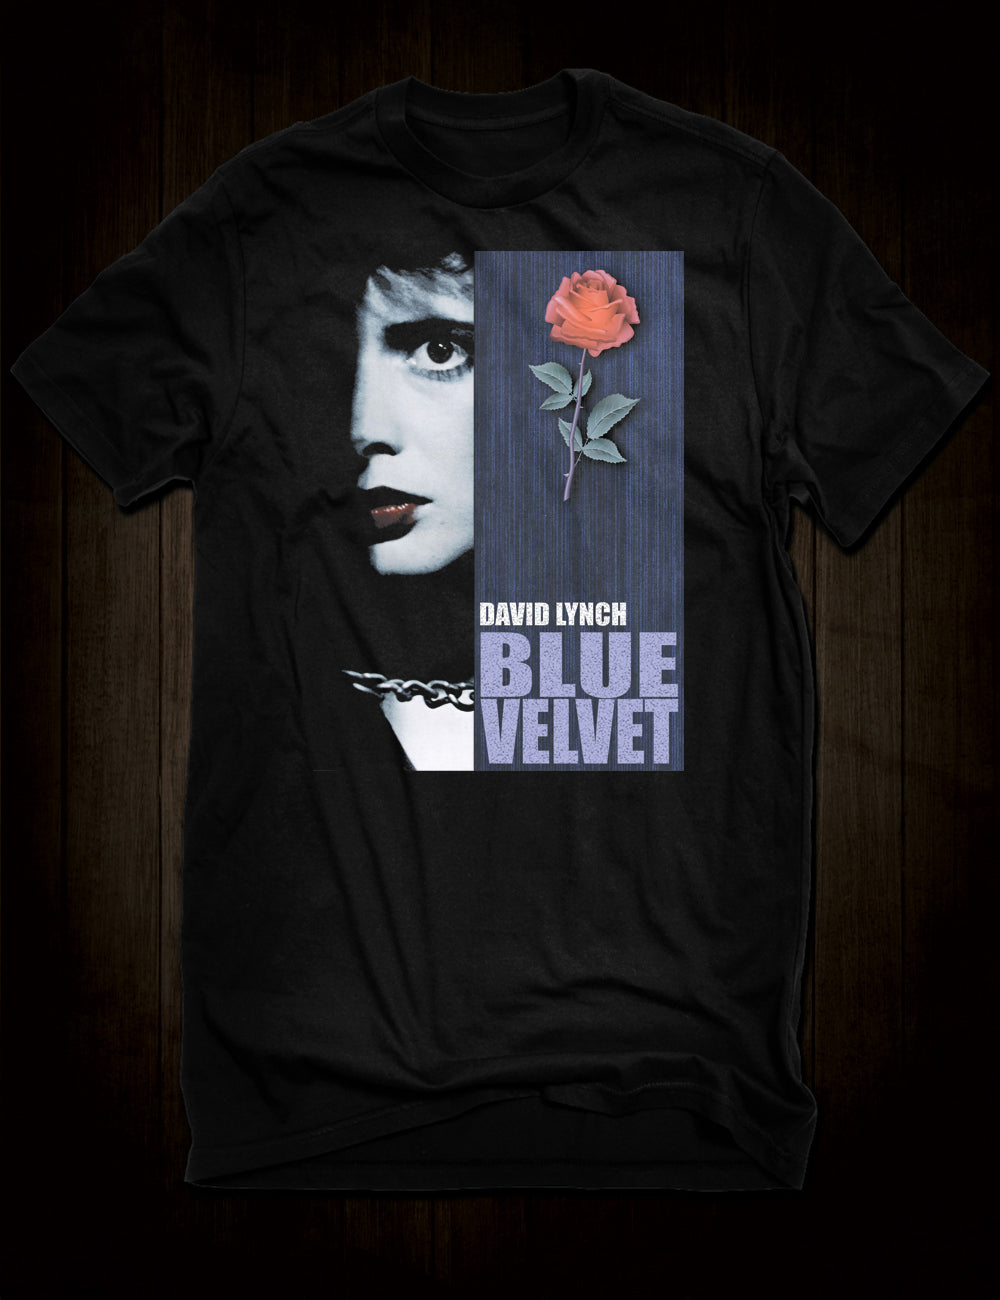 David Lynch's Blue Velvet T-Shirt